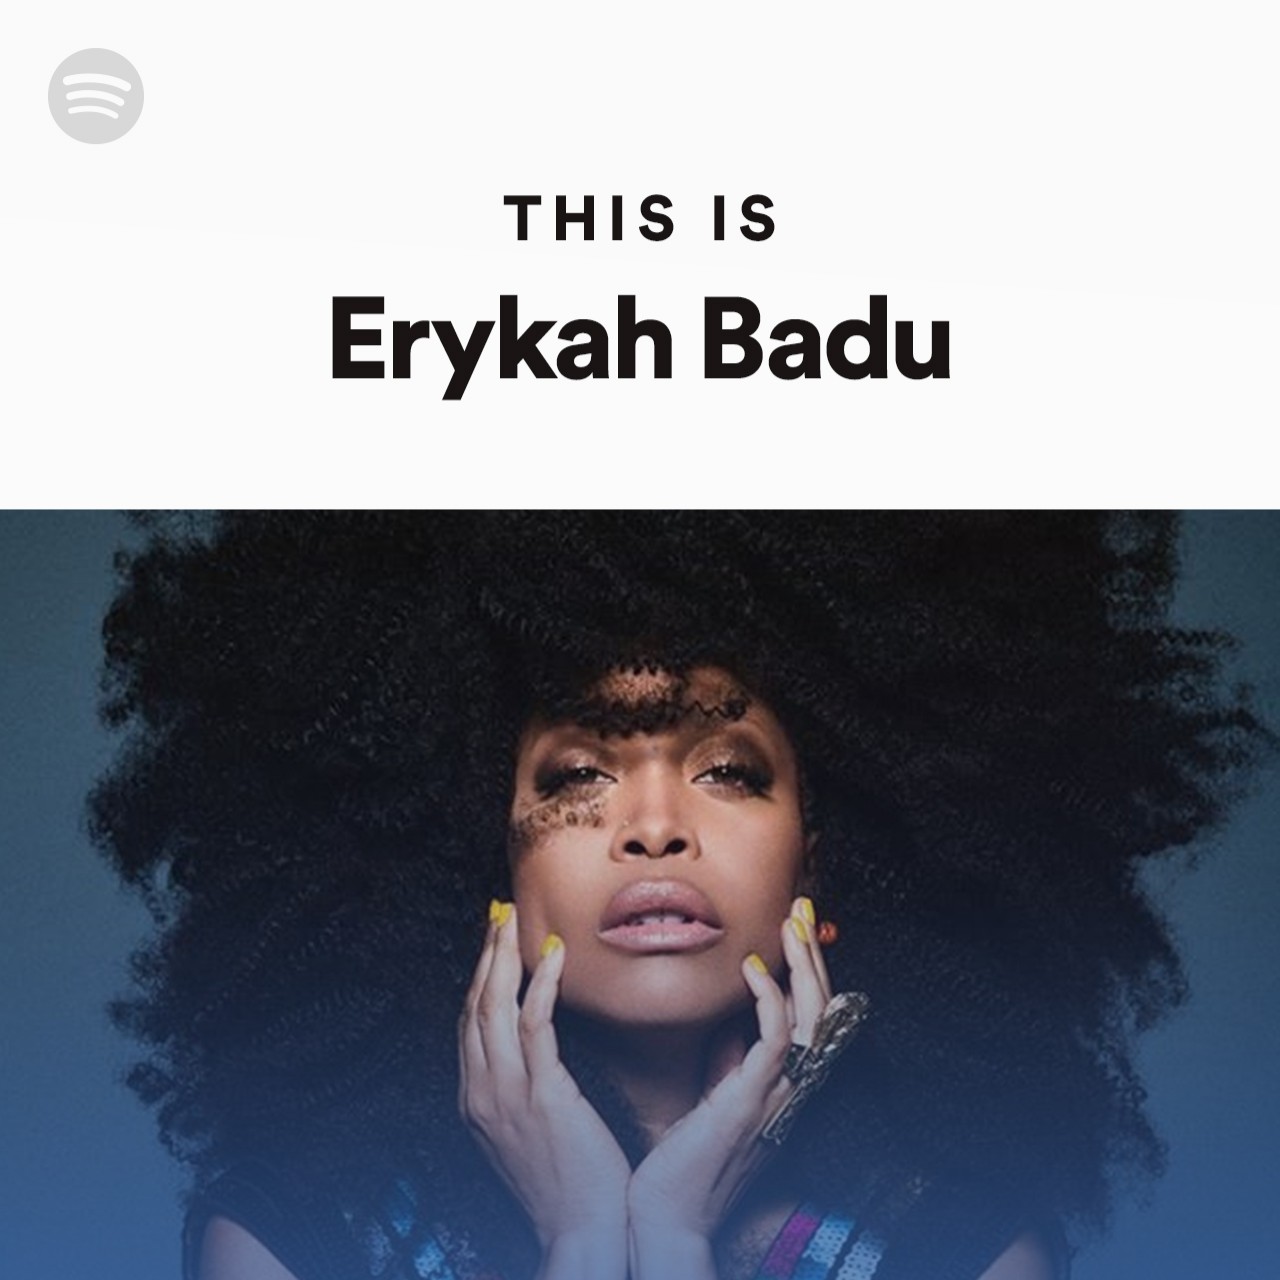 This Is Erykah Badu by spotify Spotify Playlist